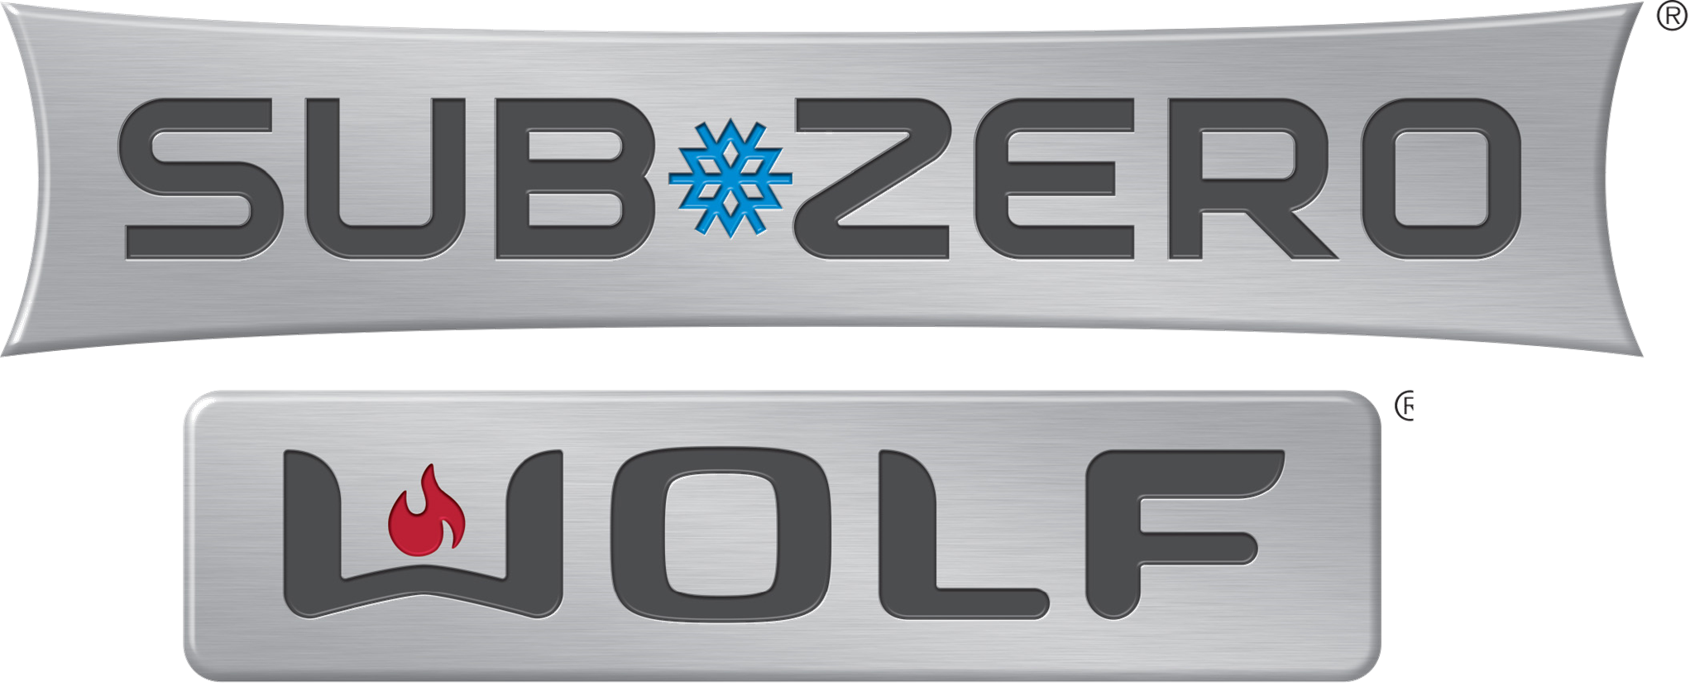 Subzero_Wolf_Logo3.png